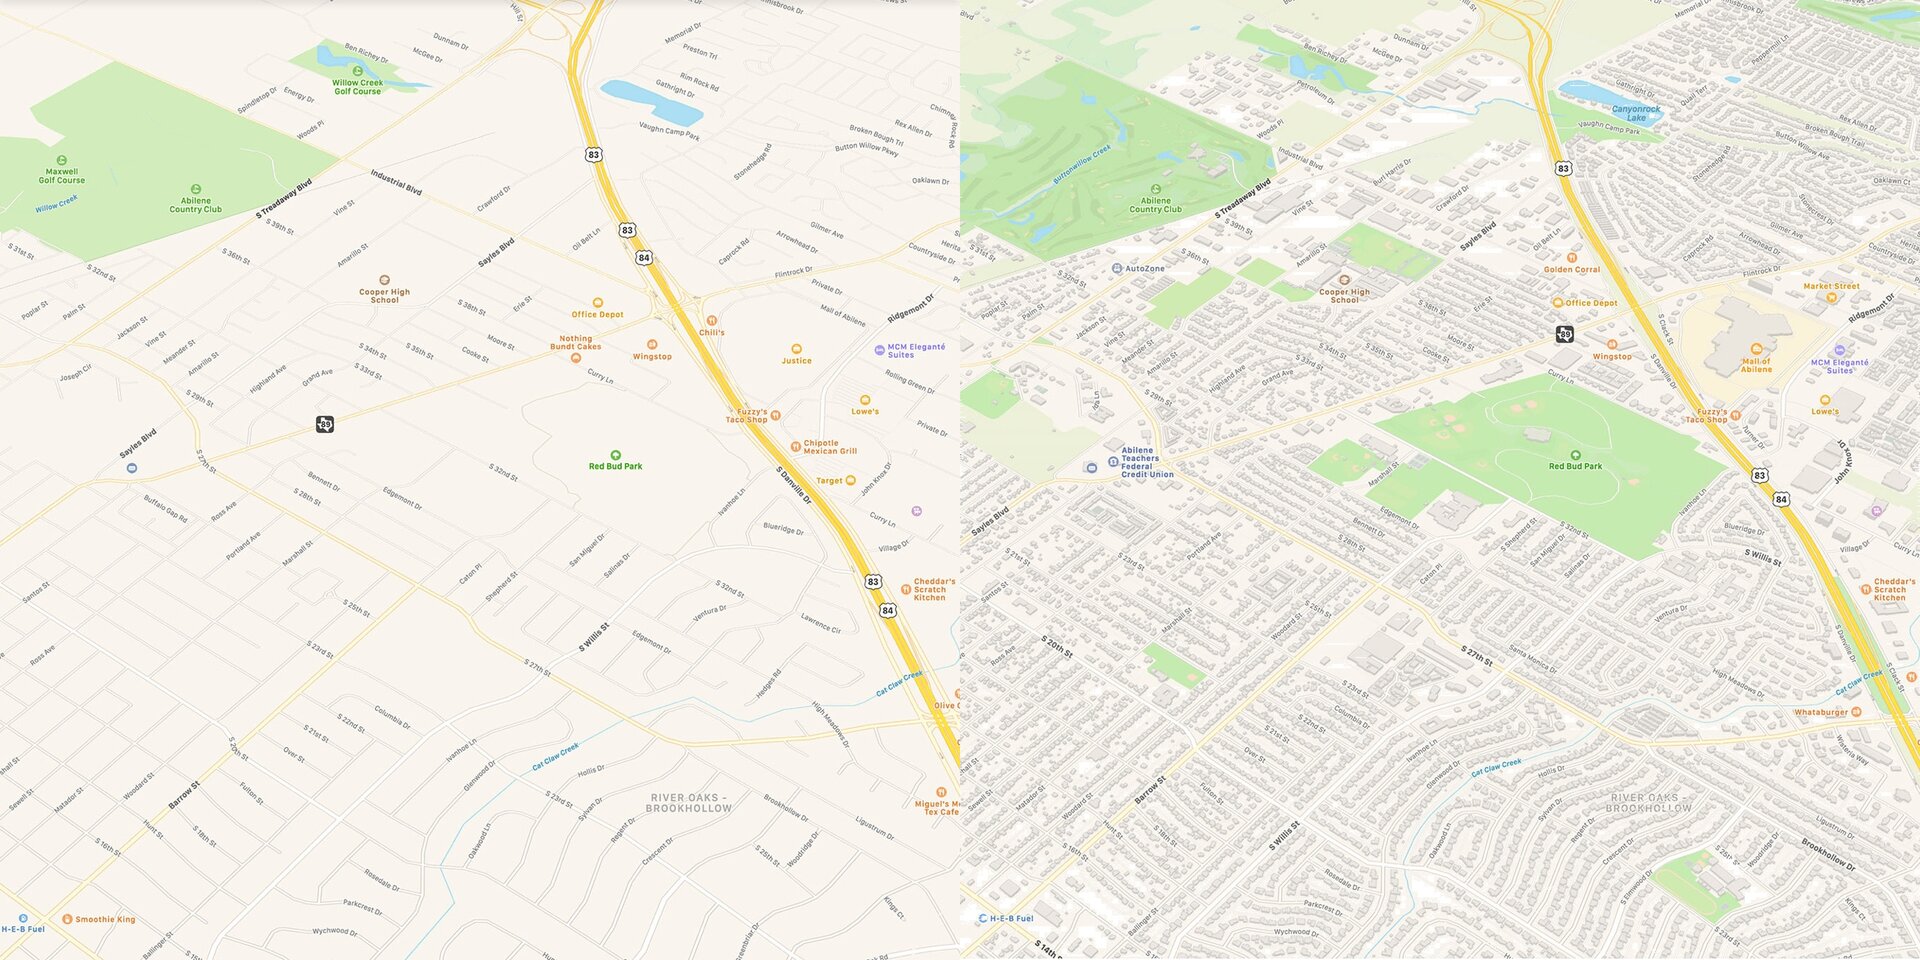 Detailgrad bei alter und neuer Version von Apple Maps